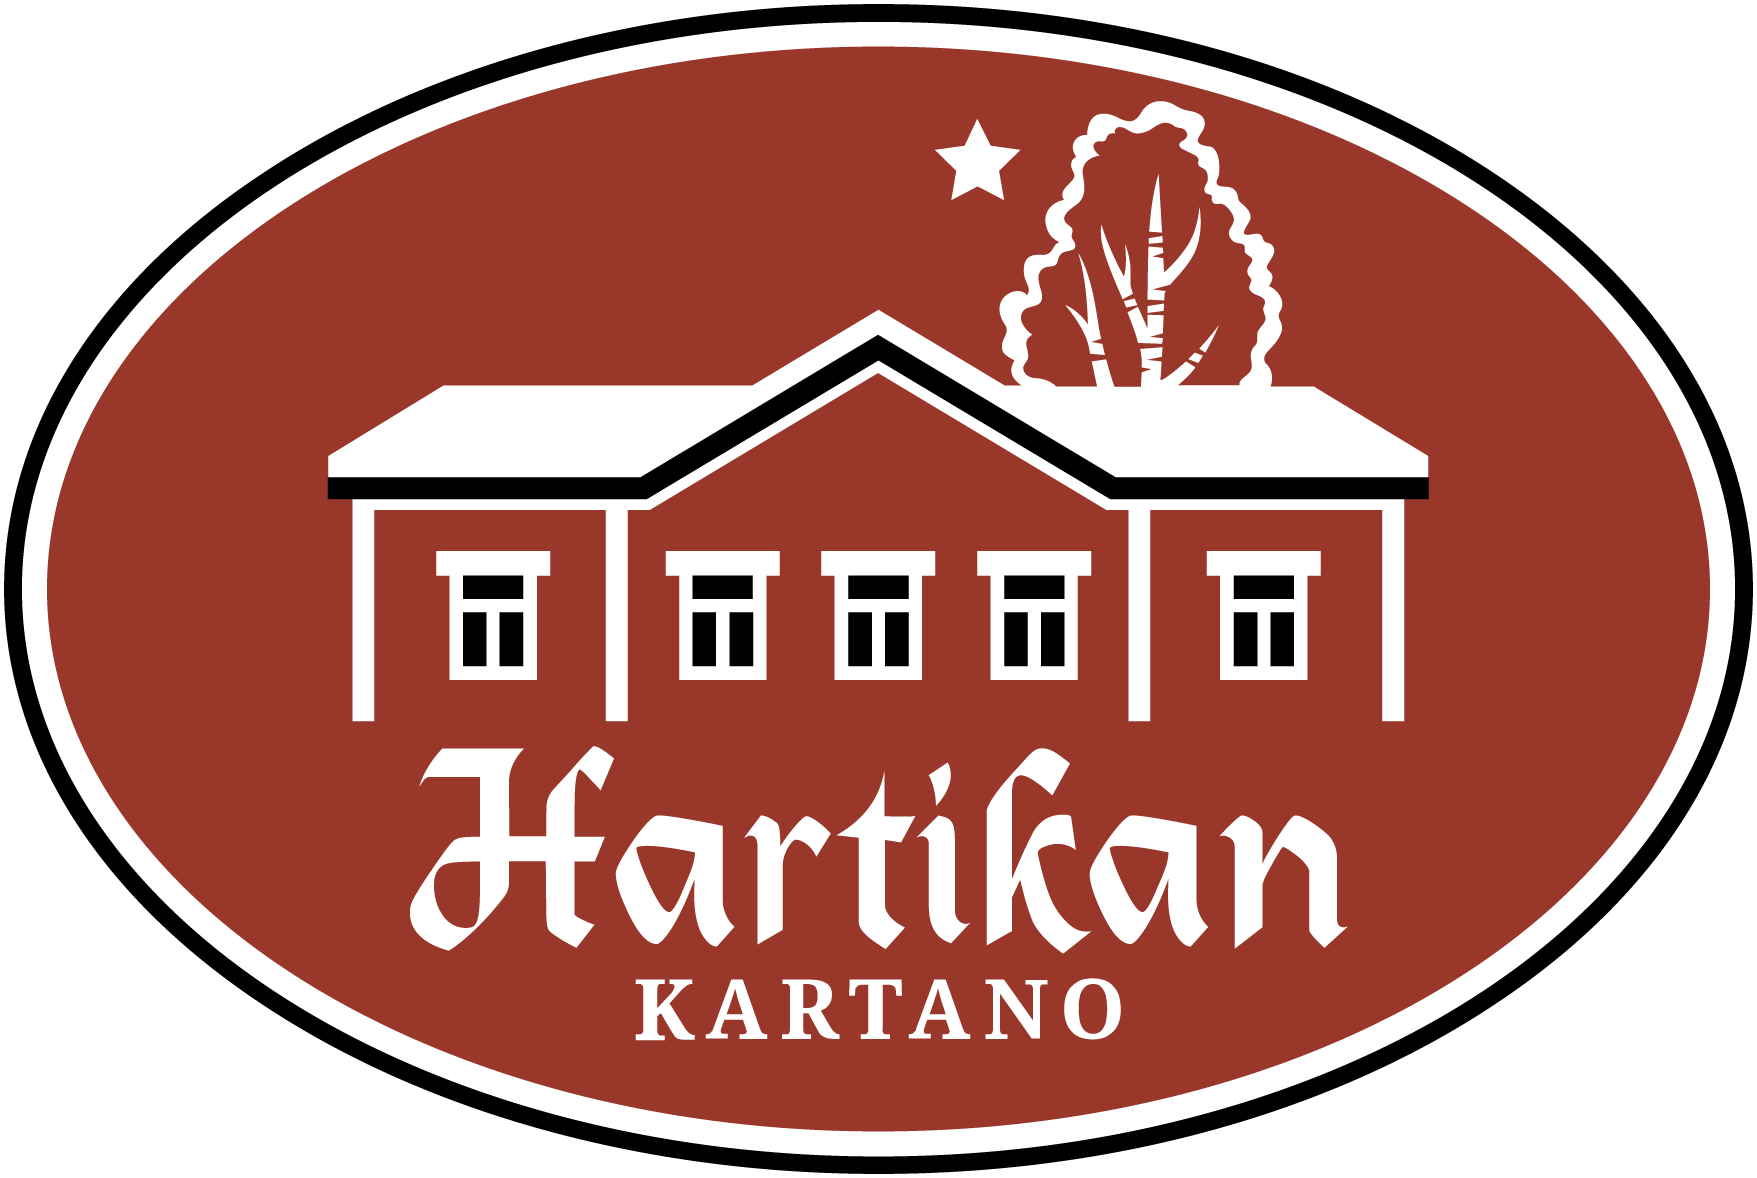 Hartikan Kartano